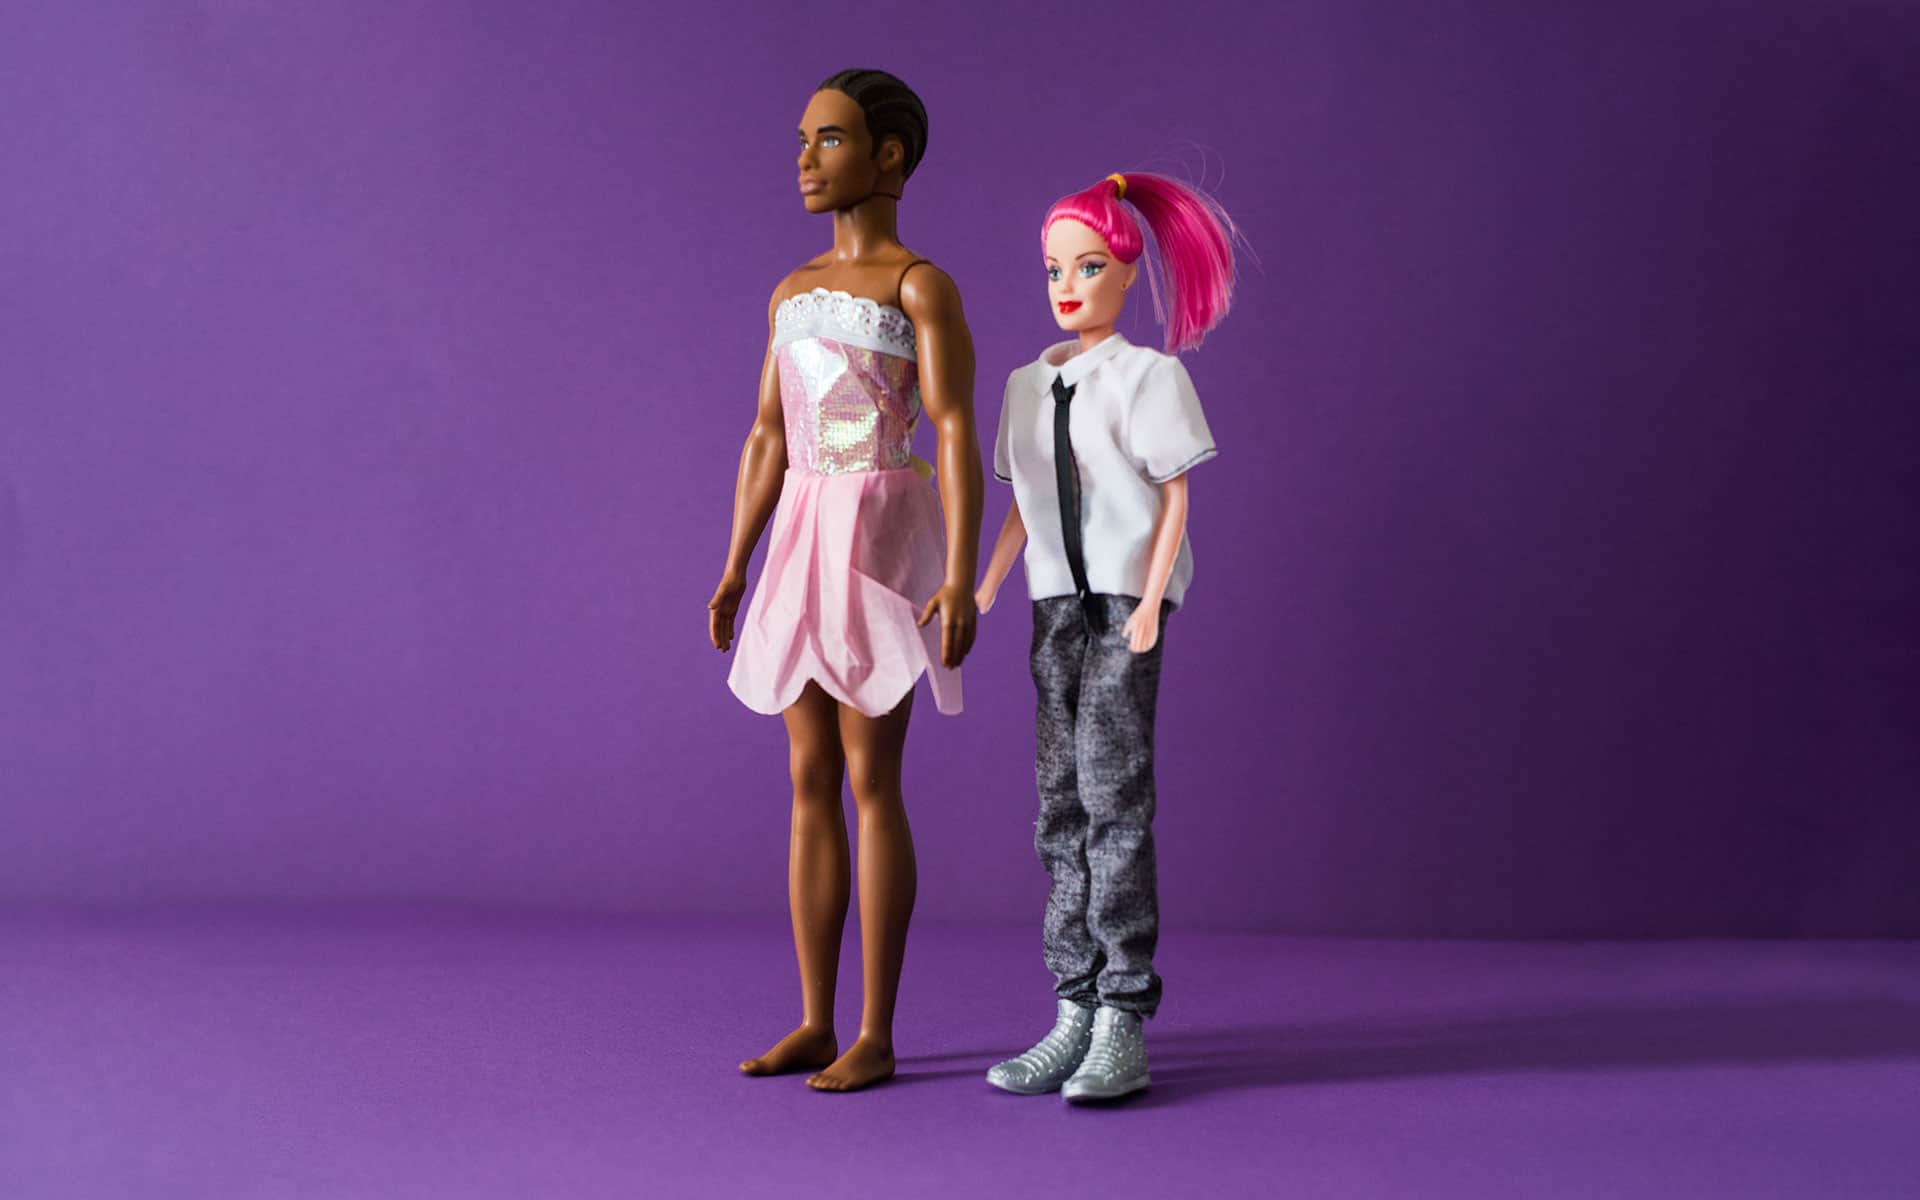 muñecos con roles de género invertidos